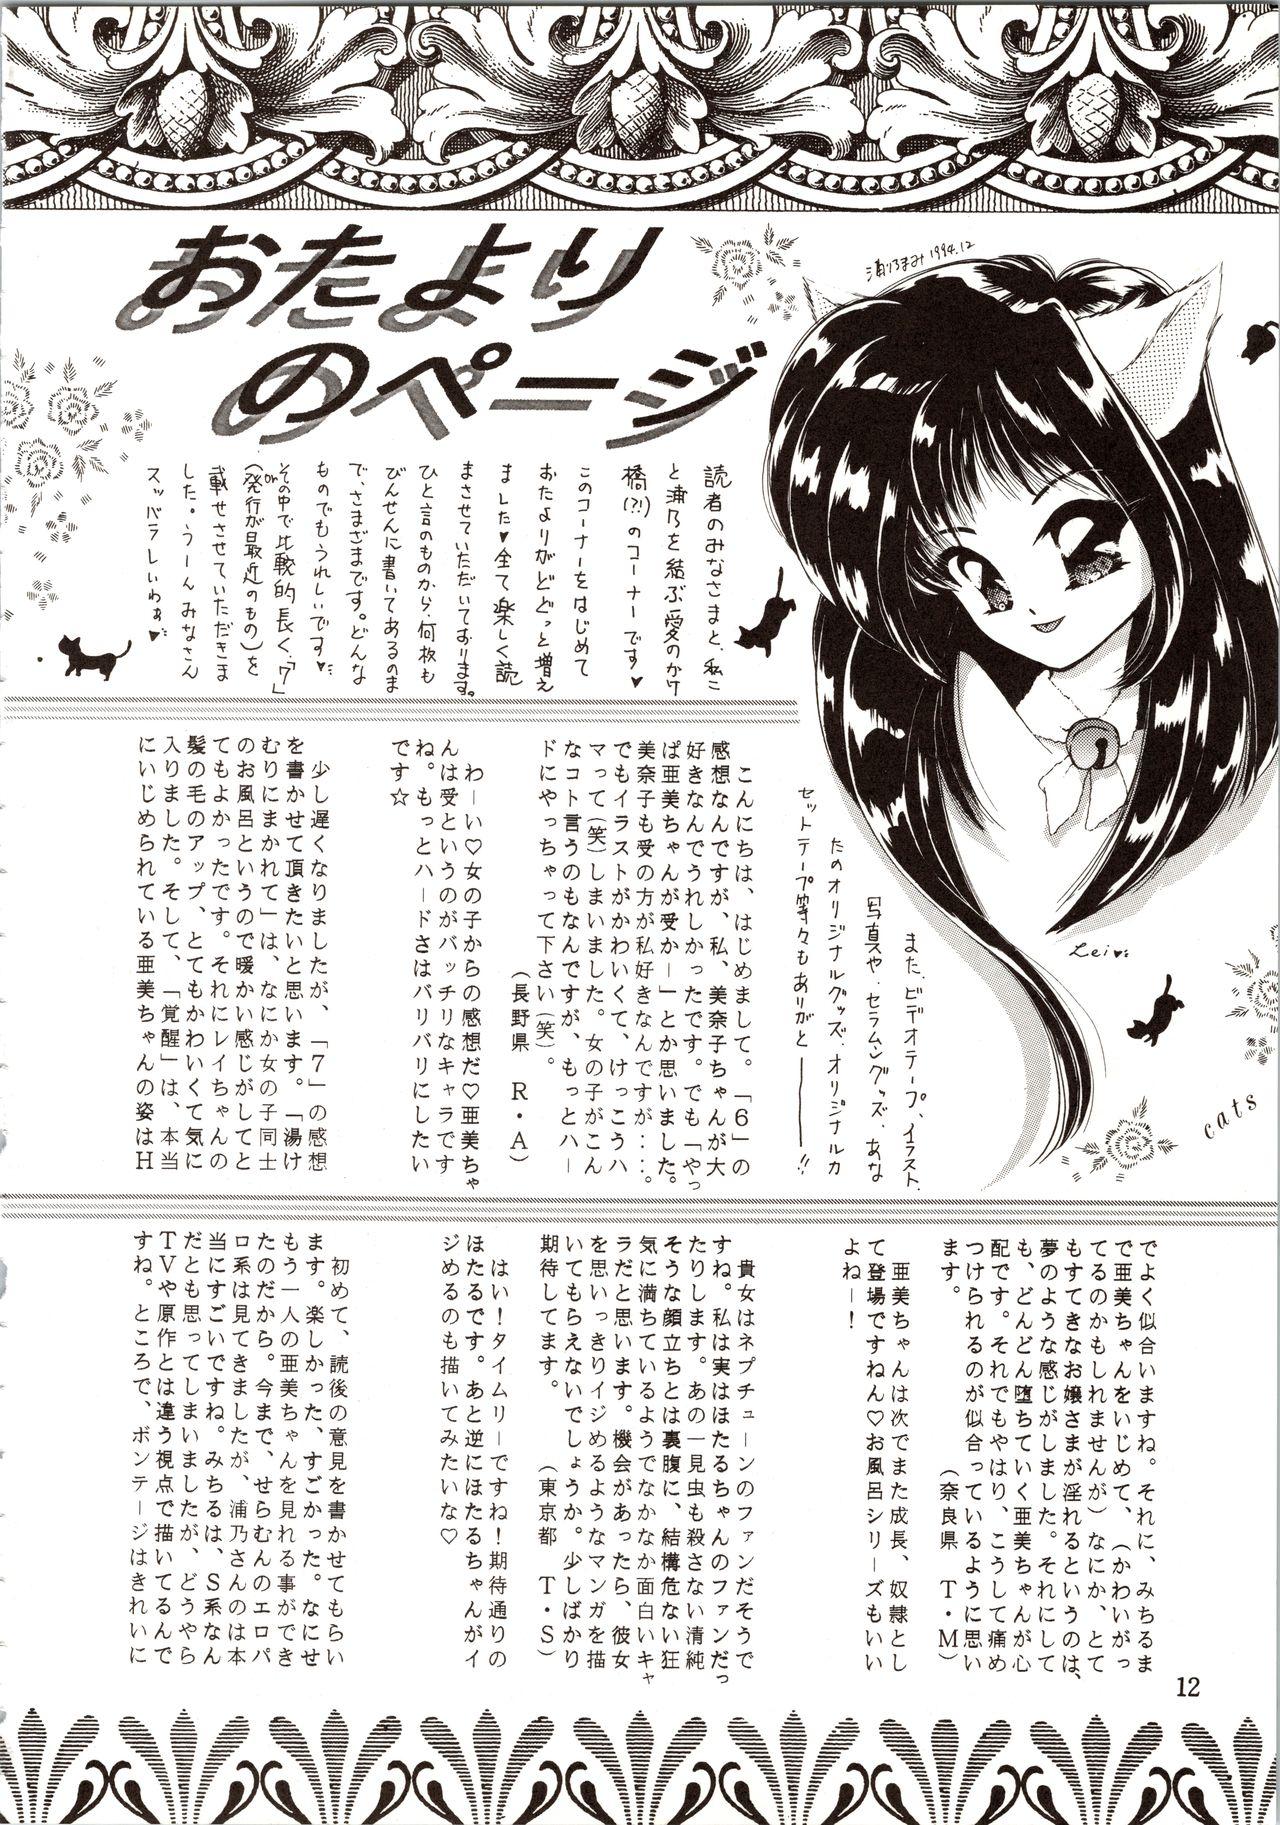 Nurumassage Tsukiyo no Tawamure 8 - Sailor moon Style - Page 12